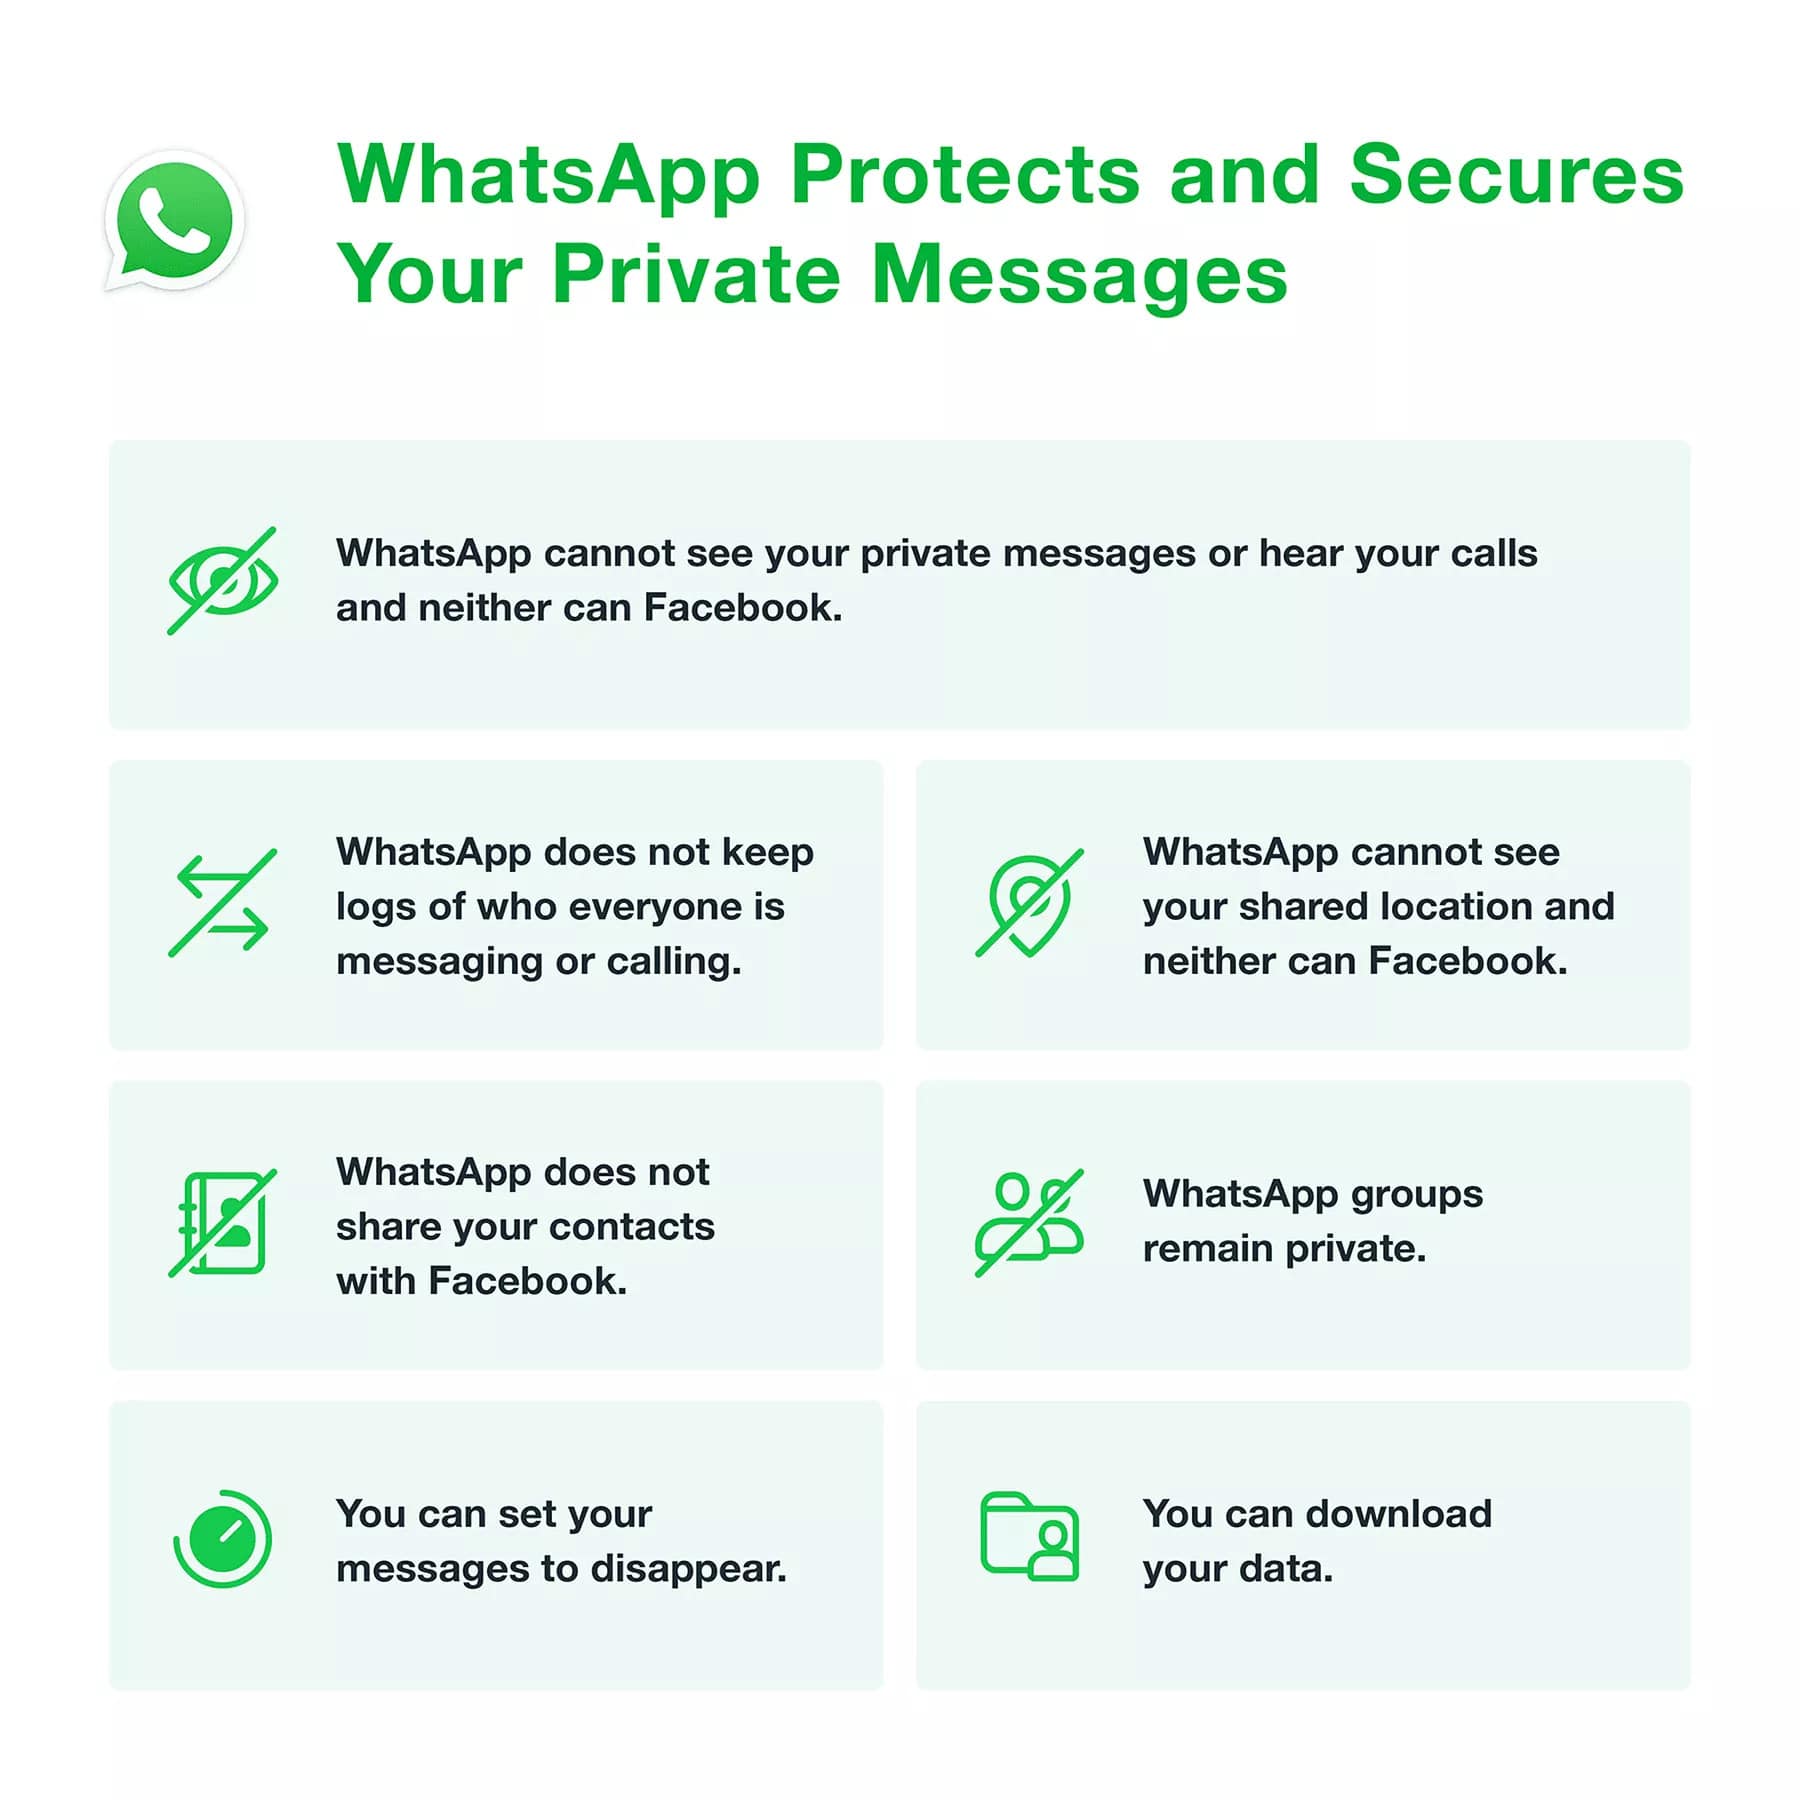 WhatsApp klärt neue Datenschutzrichtlinie und sagt, dass Nachrichten an Freunde und Familie sicher sind 310